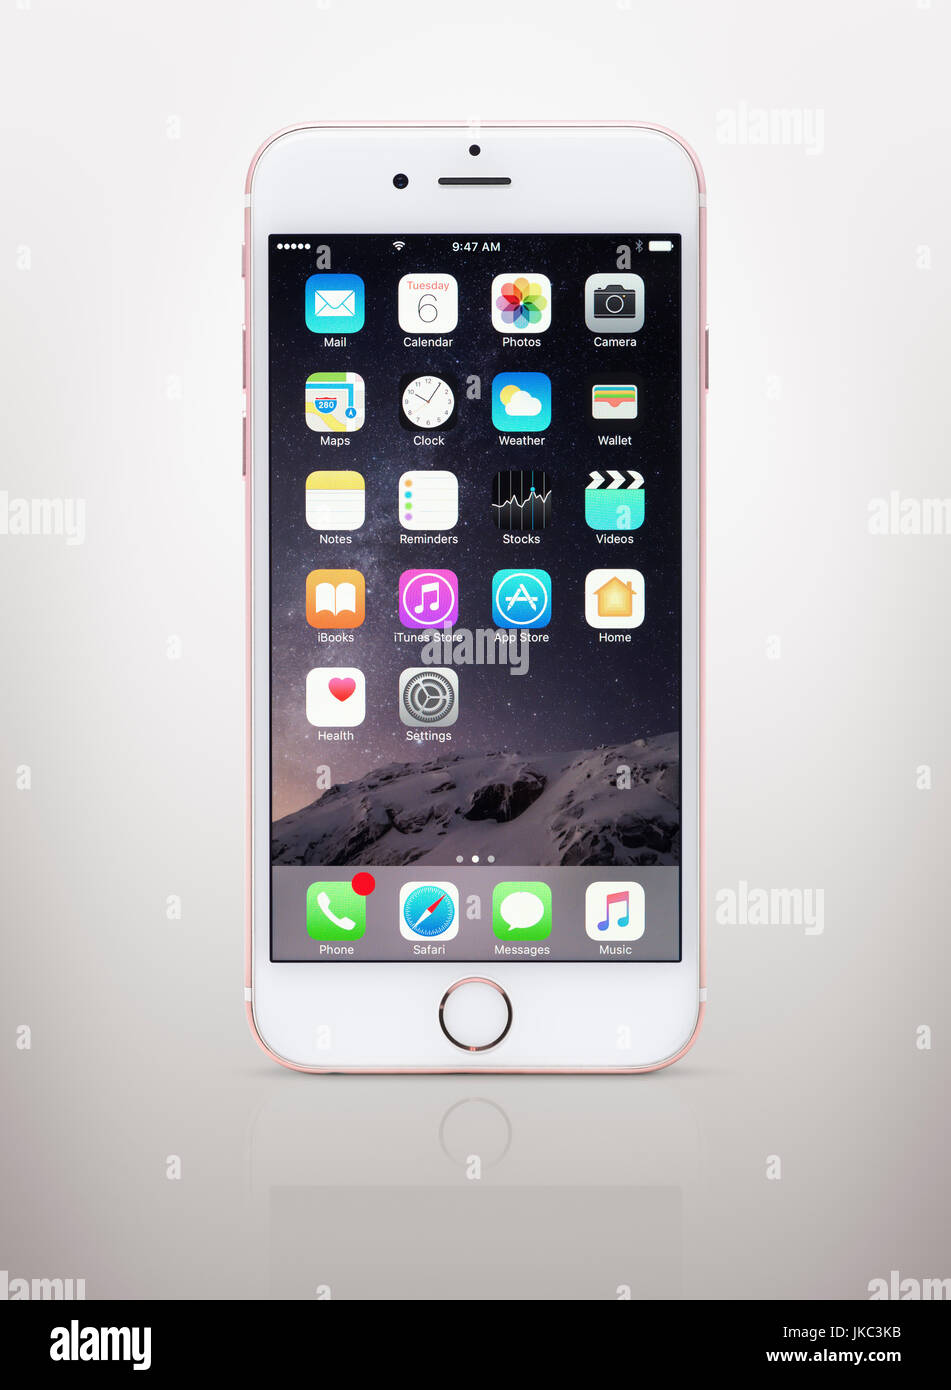 Rosa rose gold weiße Apple iPhone 6 6 s mit Desktop-Symbole auf dem Display  isoliert auf hellgrauen Hintergrund mit Beschneidungspfad Stockfotografie -  Alamy